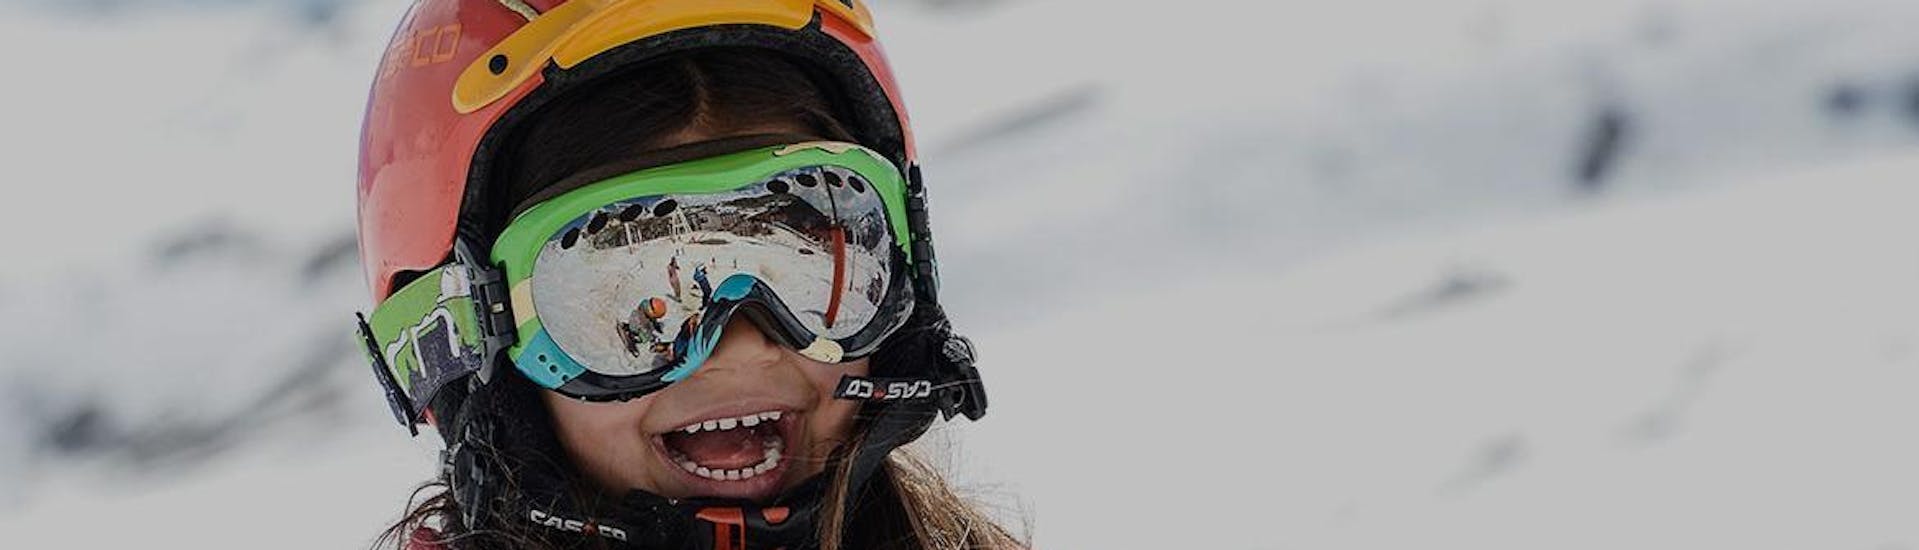 Une petite fille s'amuse avec d'autres enfants pendant un Cours de ski pour Enfants (5-13 ans) - Tous niveaux avec l'école de ski Prosneige Val d'Isère.